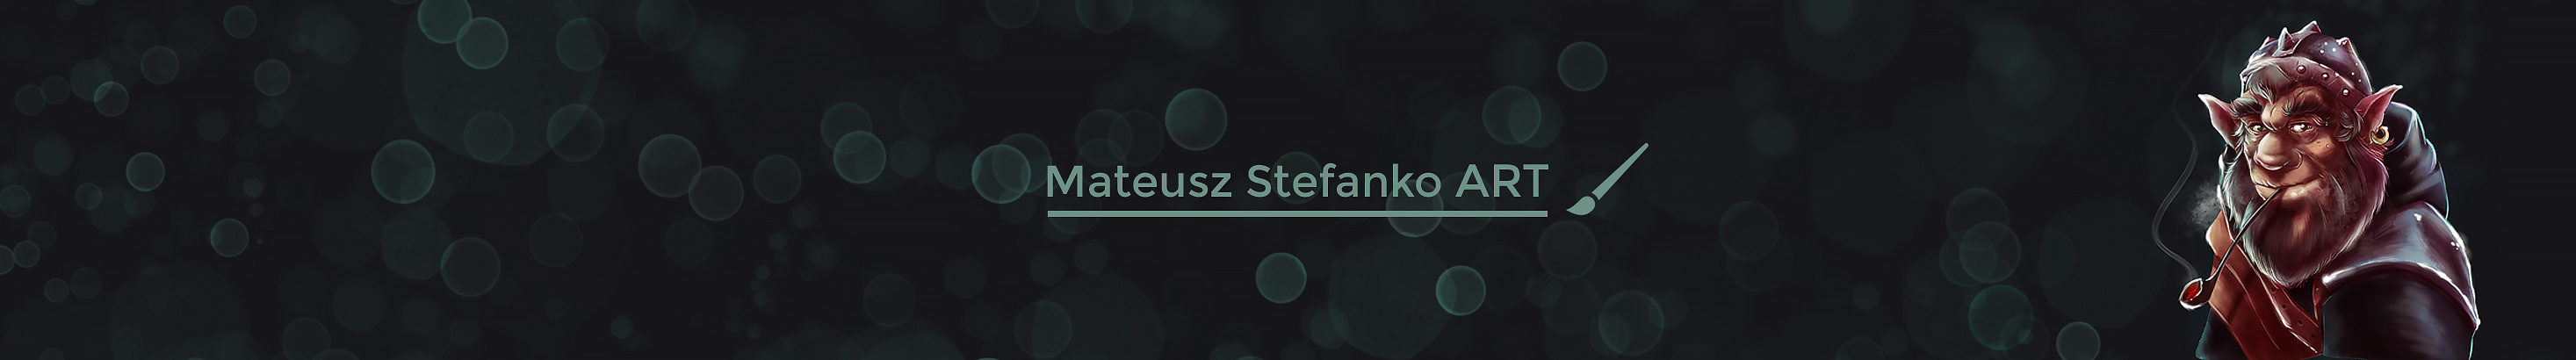 Profil-Banner von Mateusz Stefanko